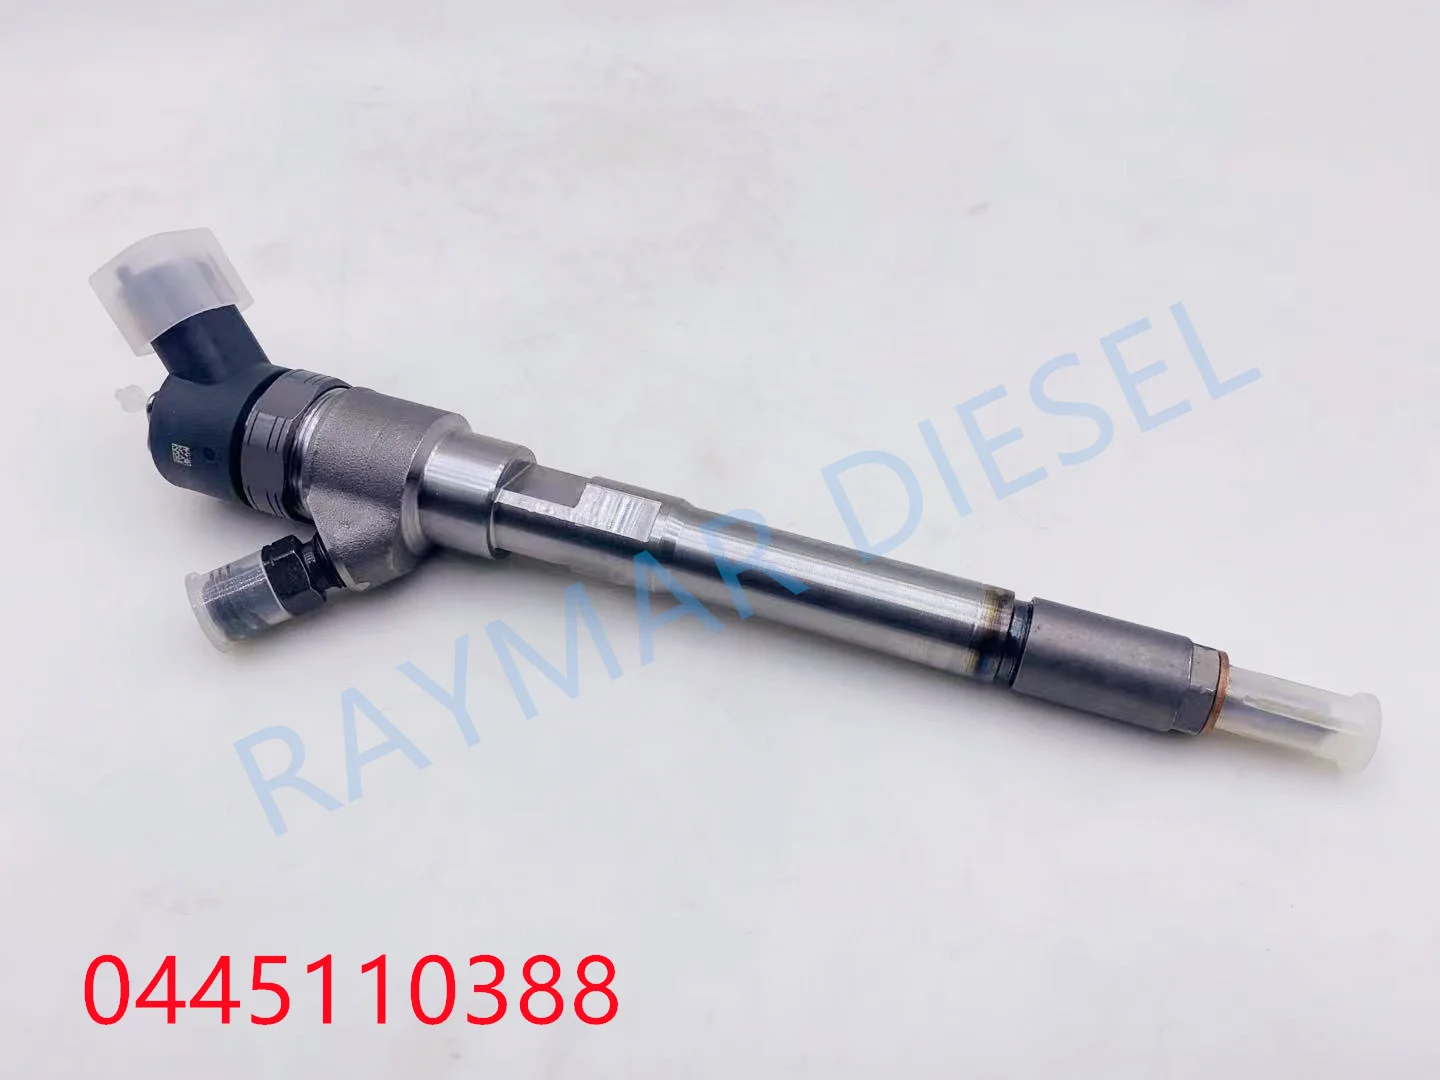 

Genuine Brand Diesel Common Rail Fuel Injector 0445110388, 0445110253, 0445110254, 0445110726, 33800-27800, F00TE0254H